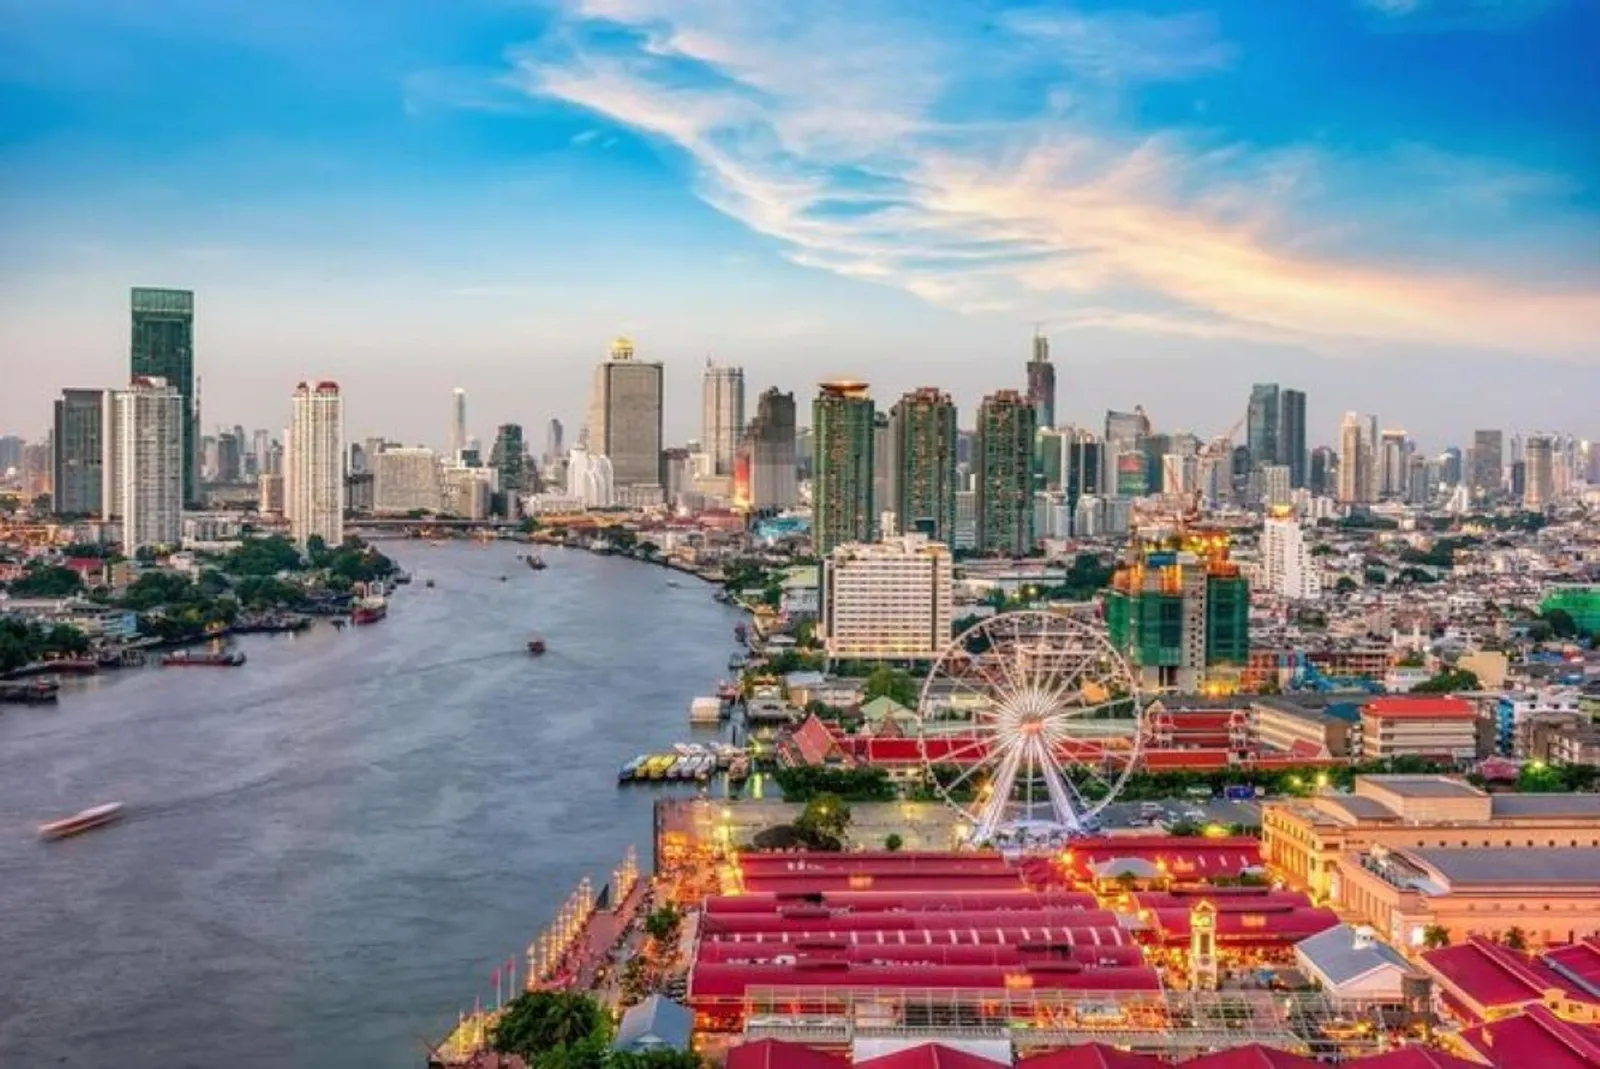 Asiatique Bangkok: Harga Tiket, Jam Buka, dan Pertunjukan Spektakuler